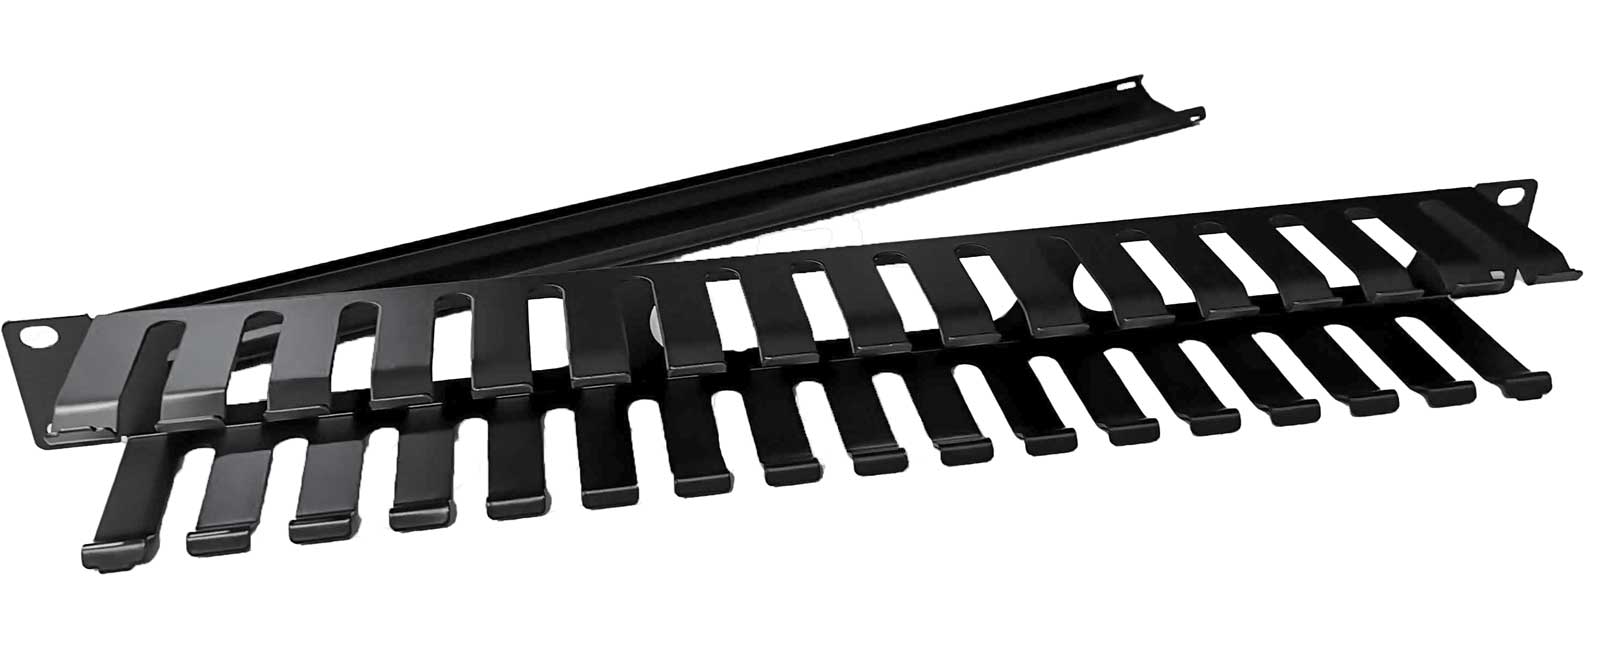 Organizator cu capac pentru rack 19 inch, 1U, ORGAN-CAPAC